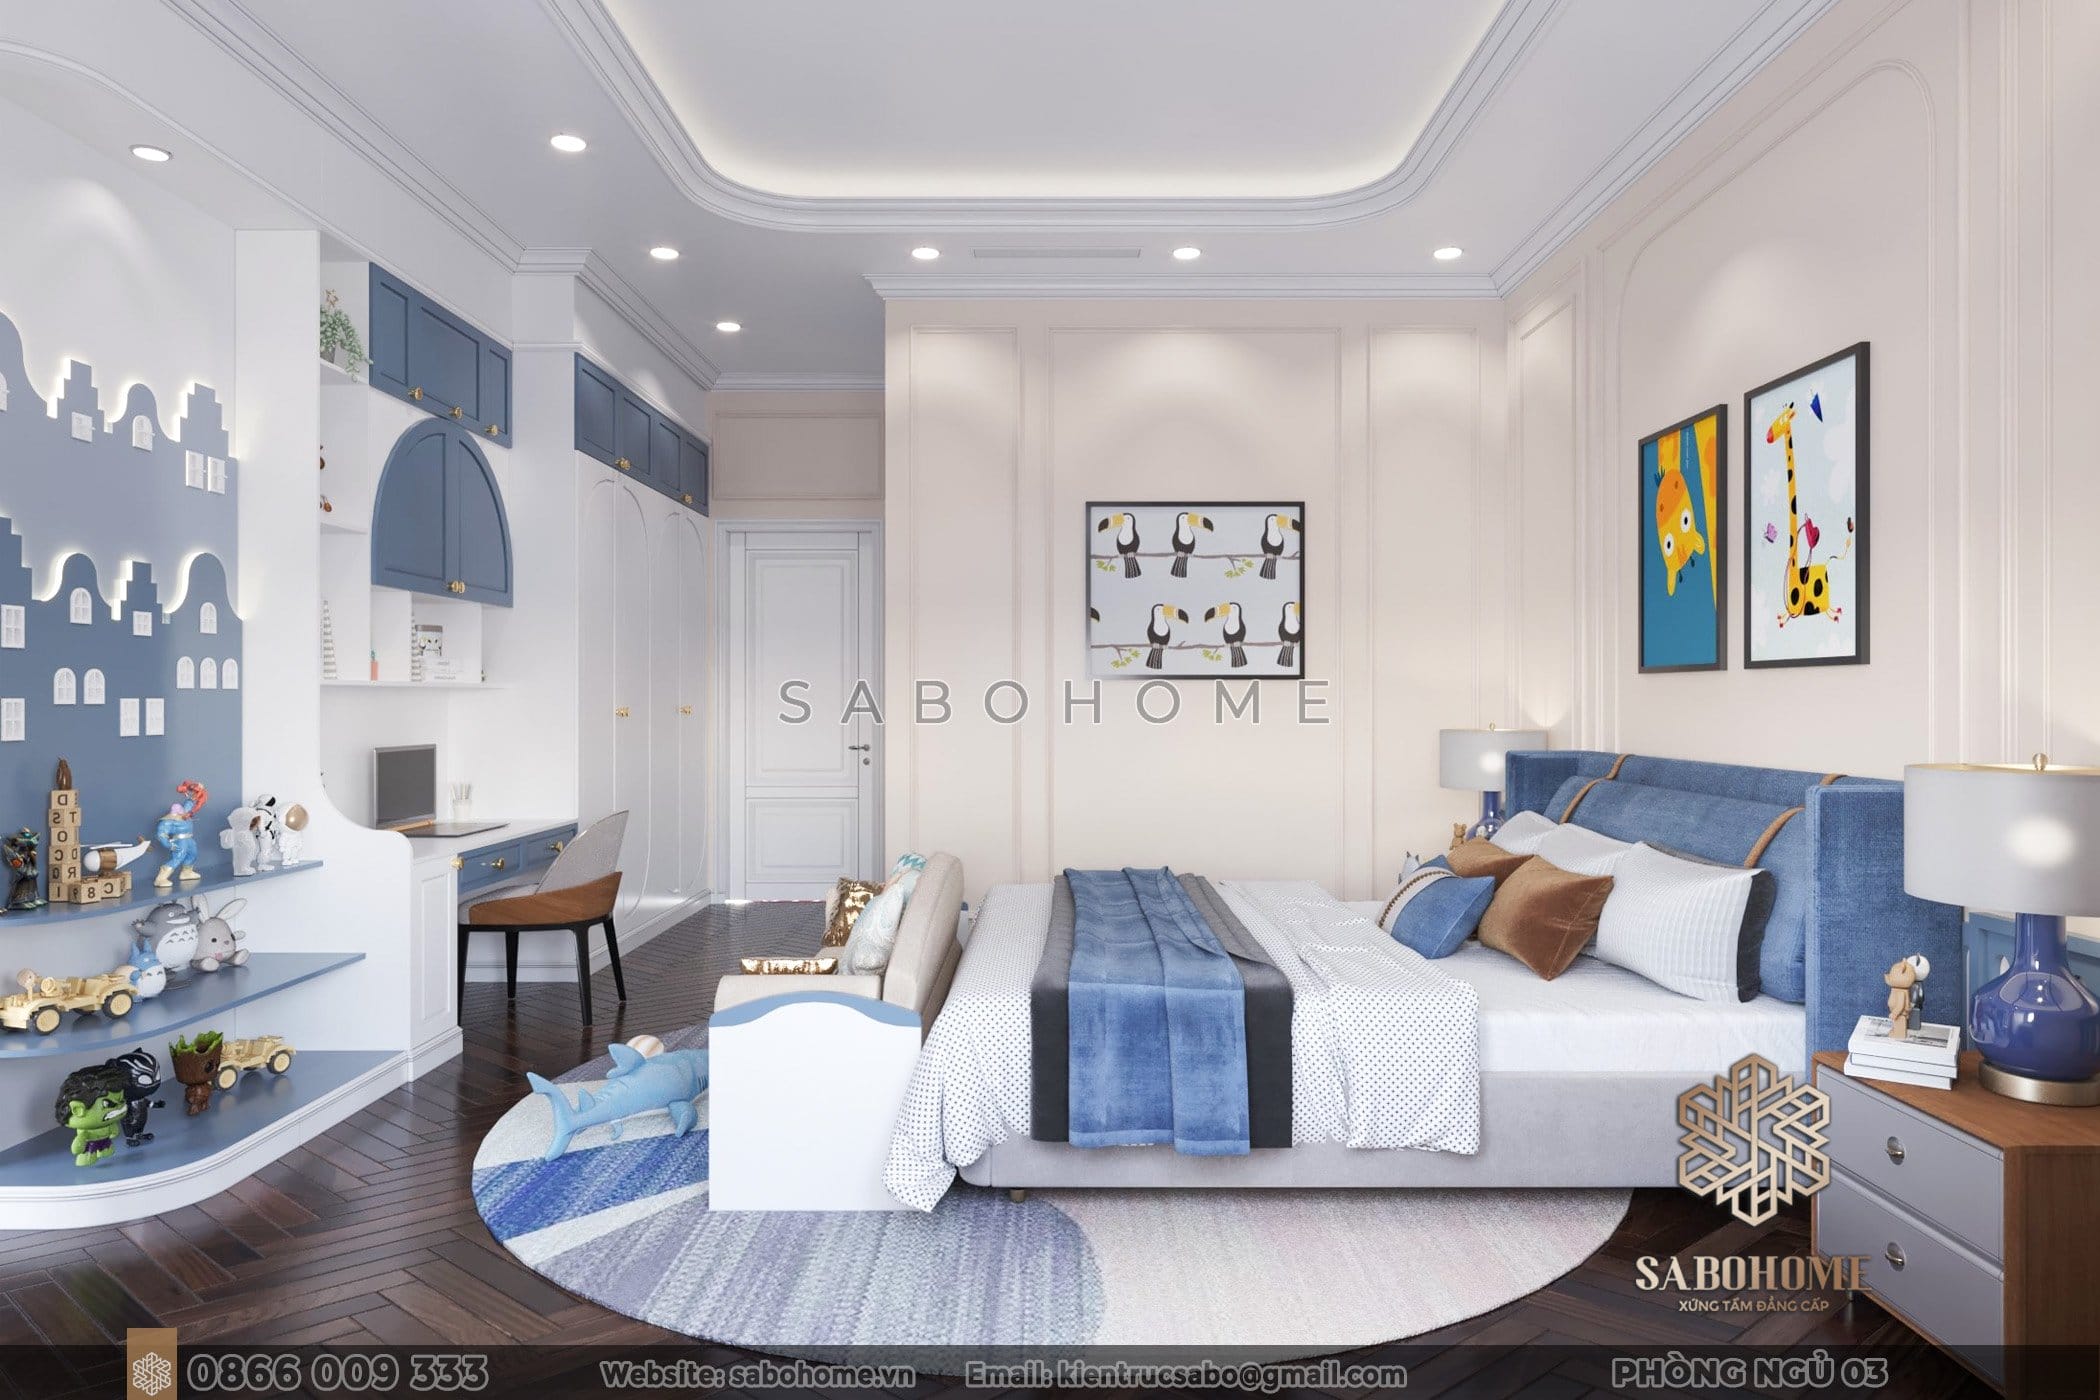 Phòng ngủ Sabohome - nơi bạn tạo dựng không gian riêng tư và phong cách